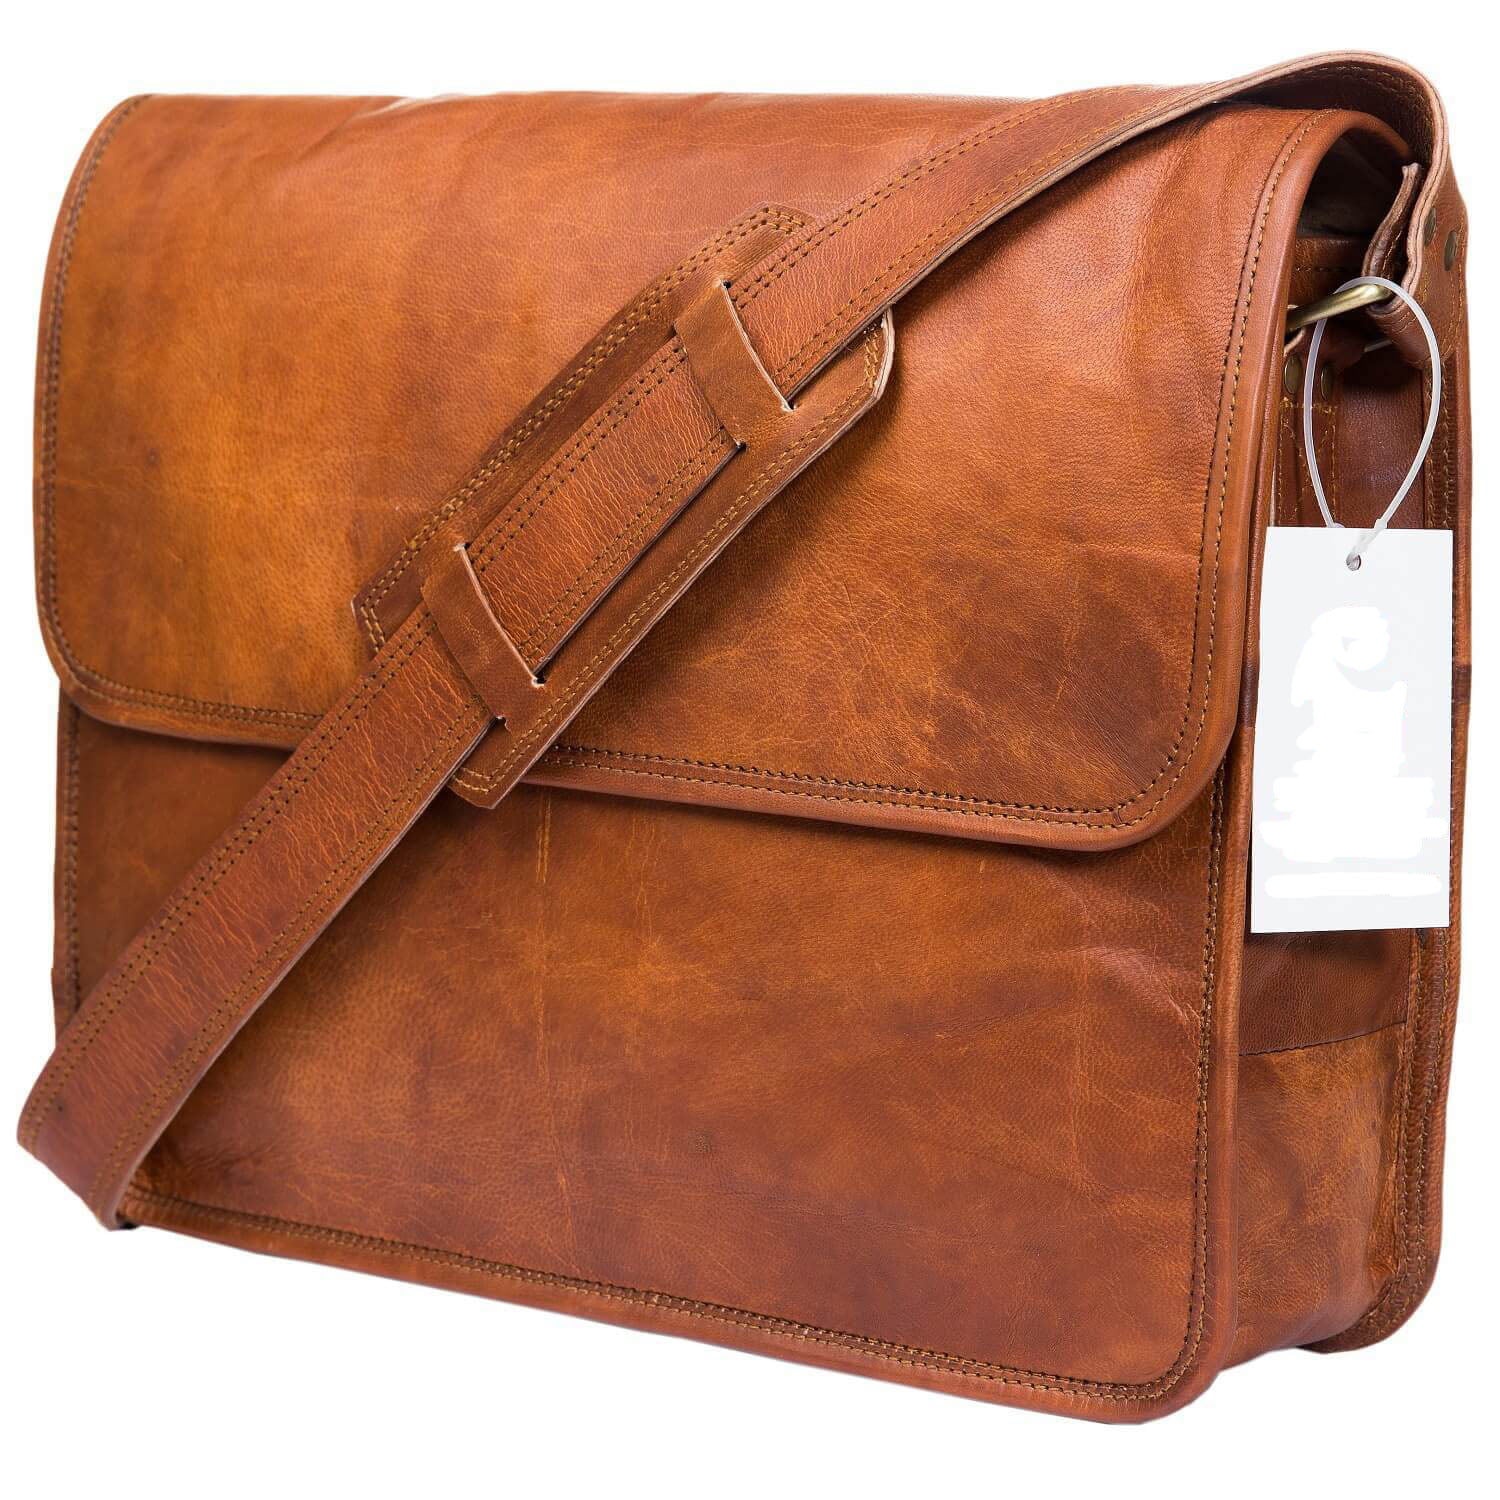 Leather mens messenger women messenger leather bag mens leatherbag shoulder bag business bag brown briefcase leather crossbody satchel 